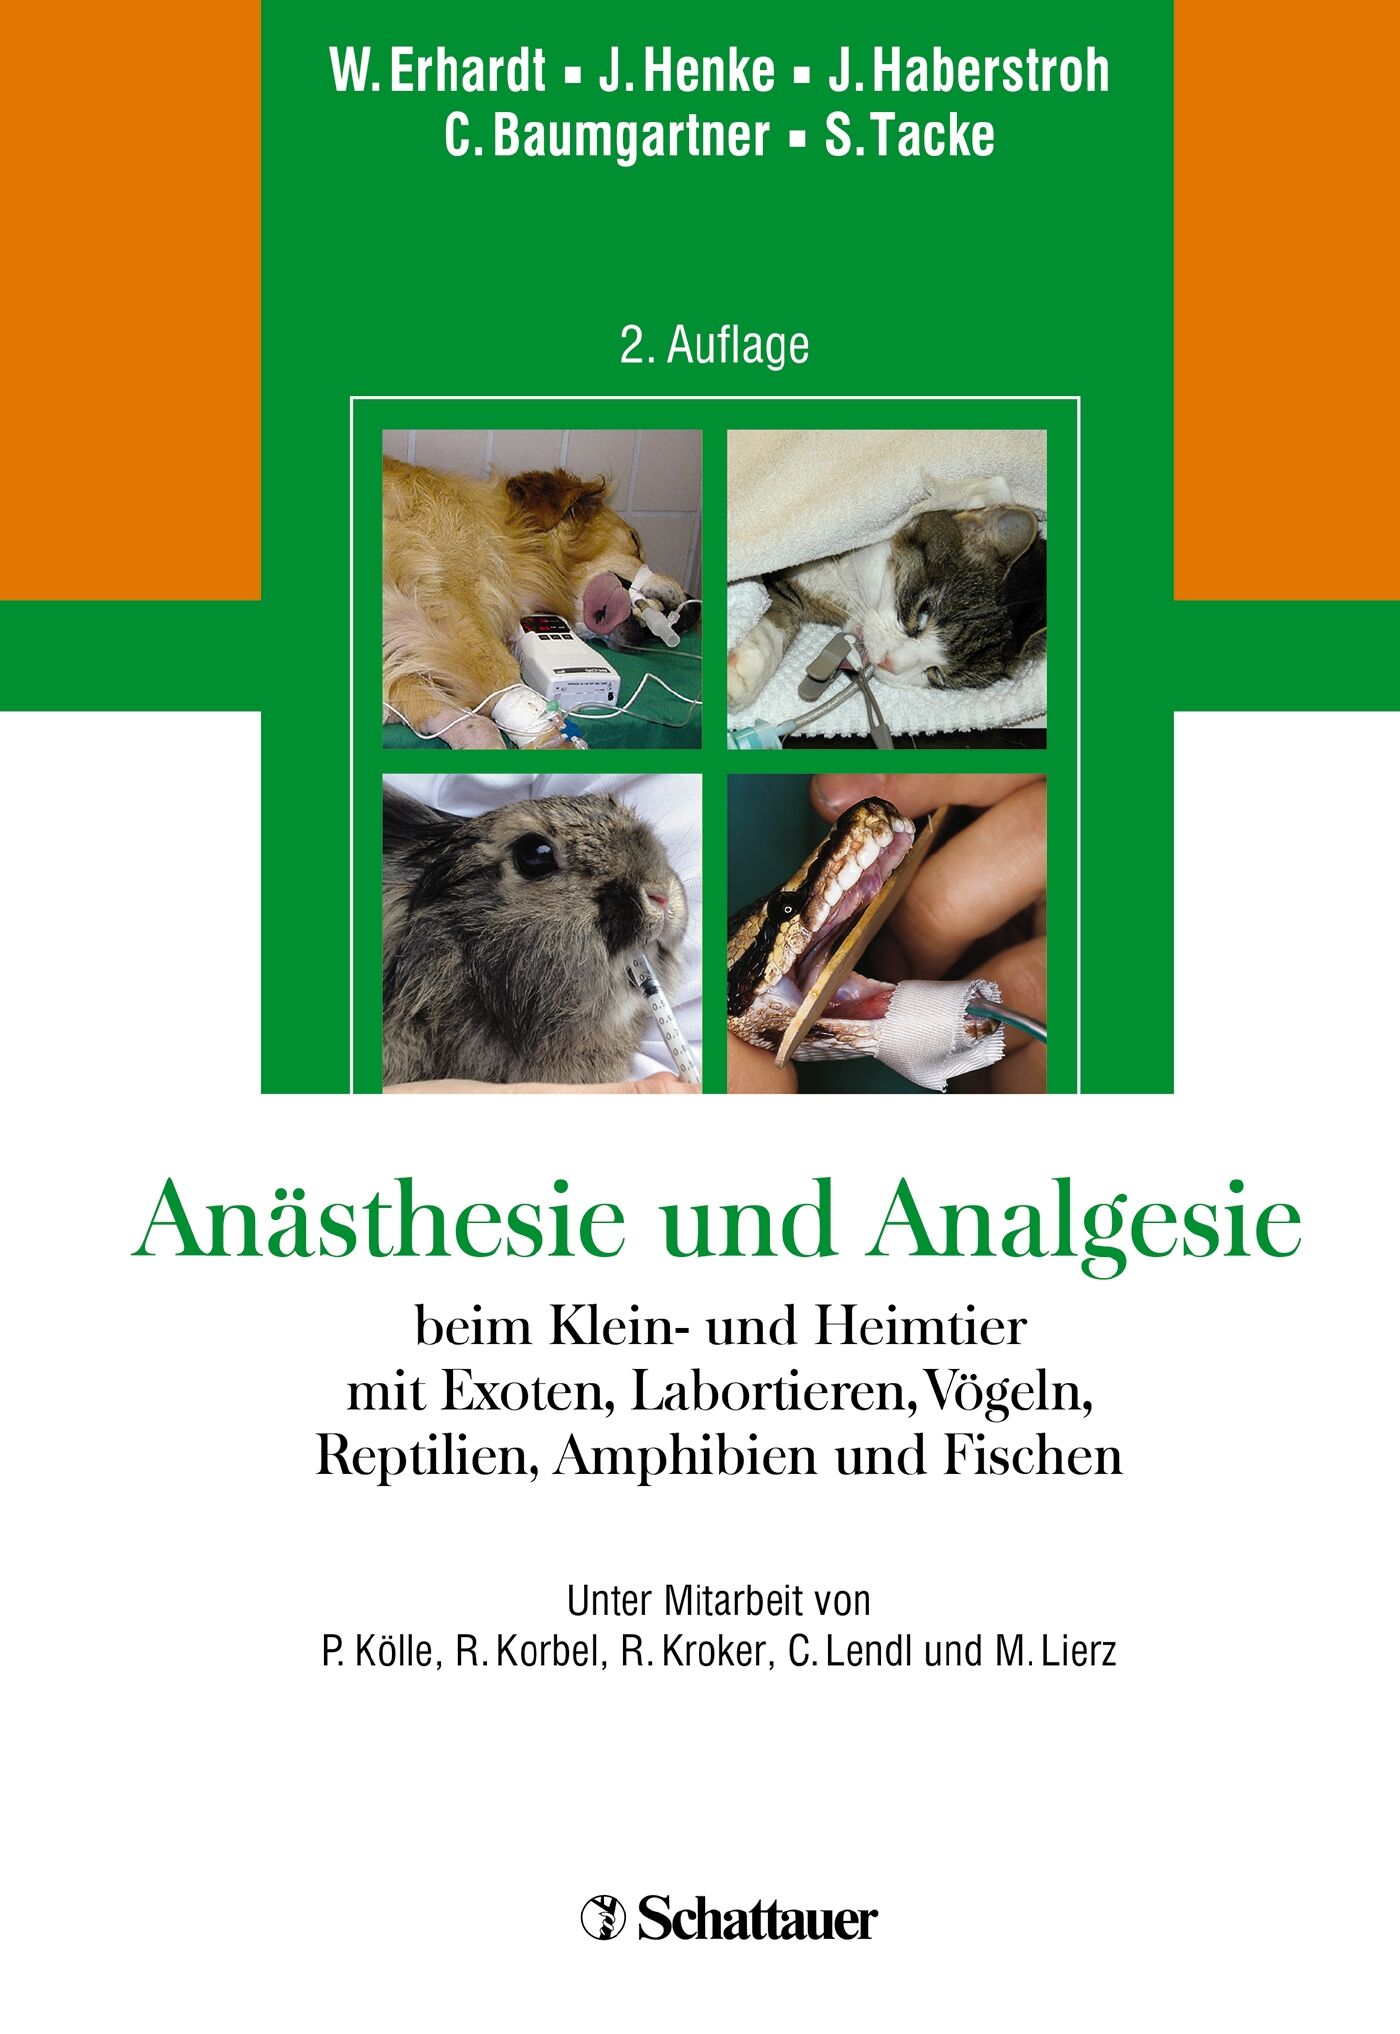 Anästhesie und Analgesie beim Klein und Heimtier, 9783794527816